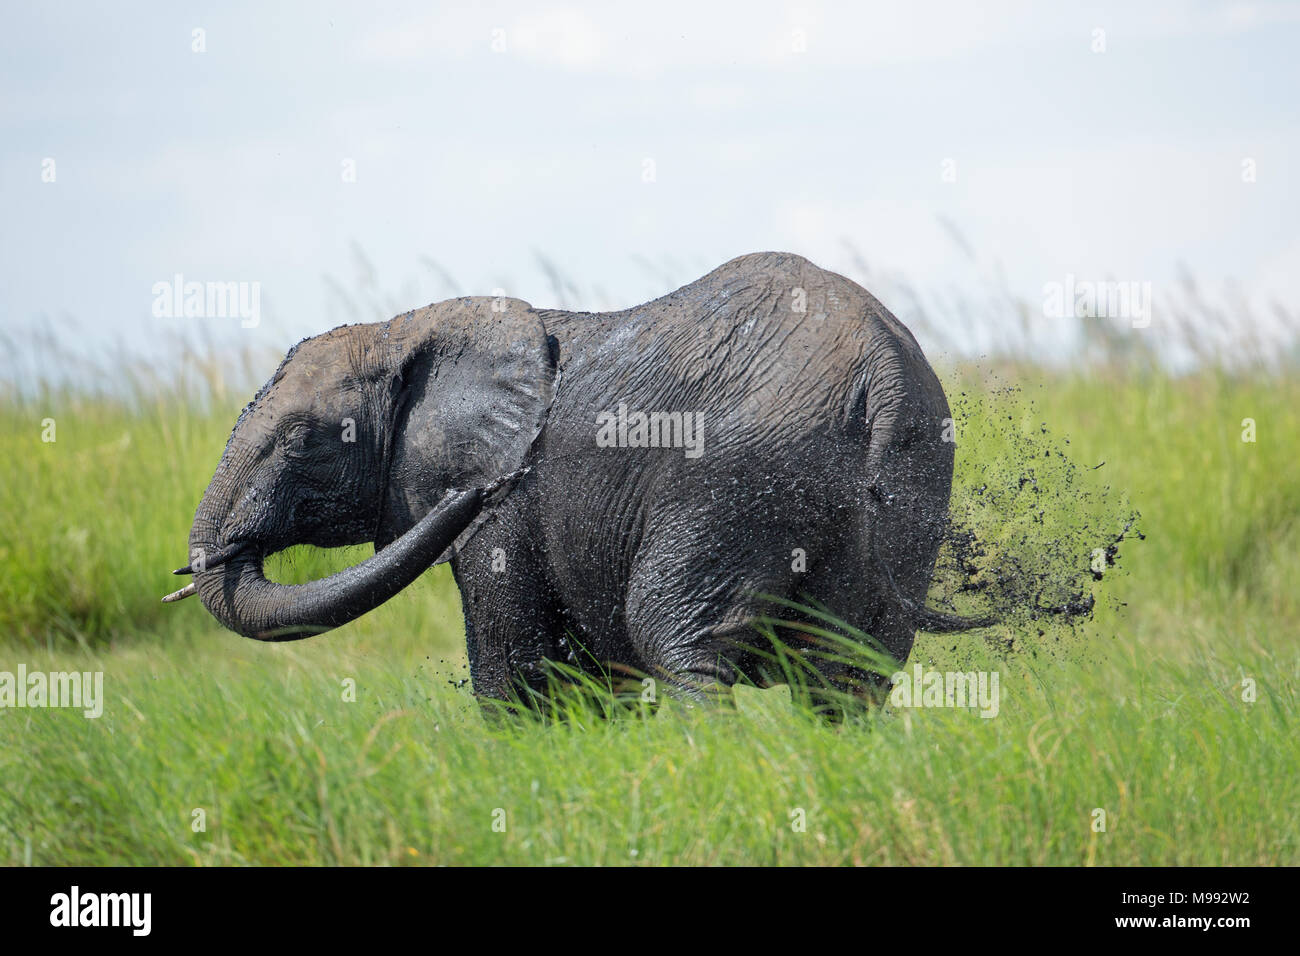 L'éléphant africain (Loxodonta africana). Utilisant la ligne réseau à jeter de l'eau boueuse sur le corps en donnant une certaine protection contre le soleil de midi. Remarque l'eau l'eau Banque D'Images